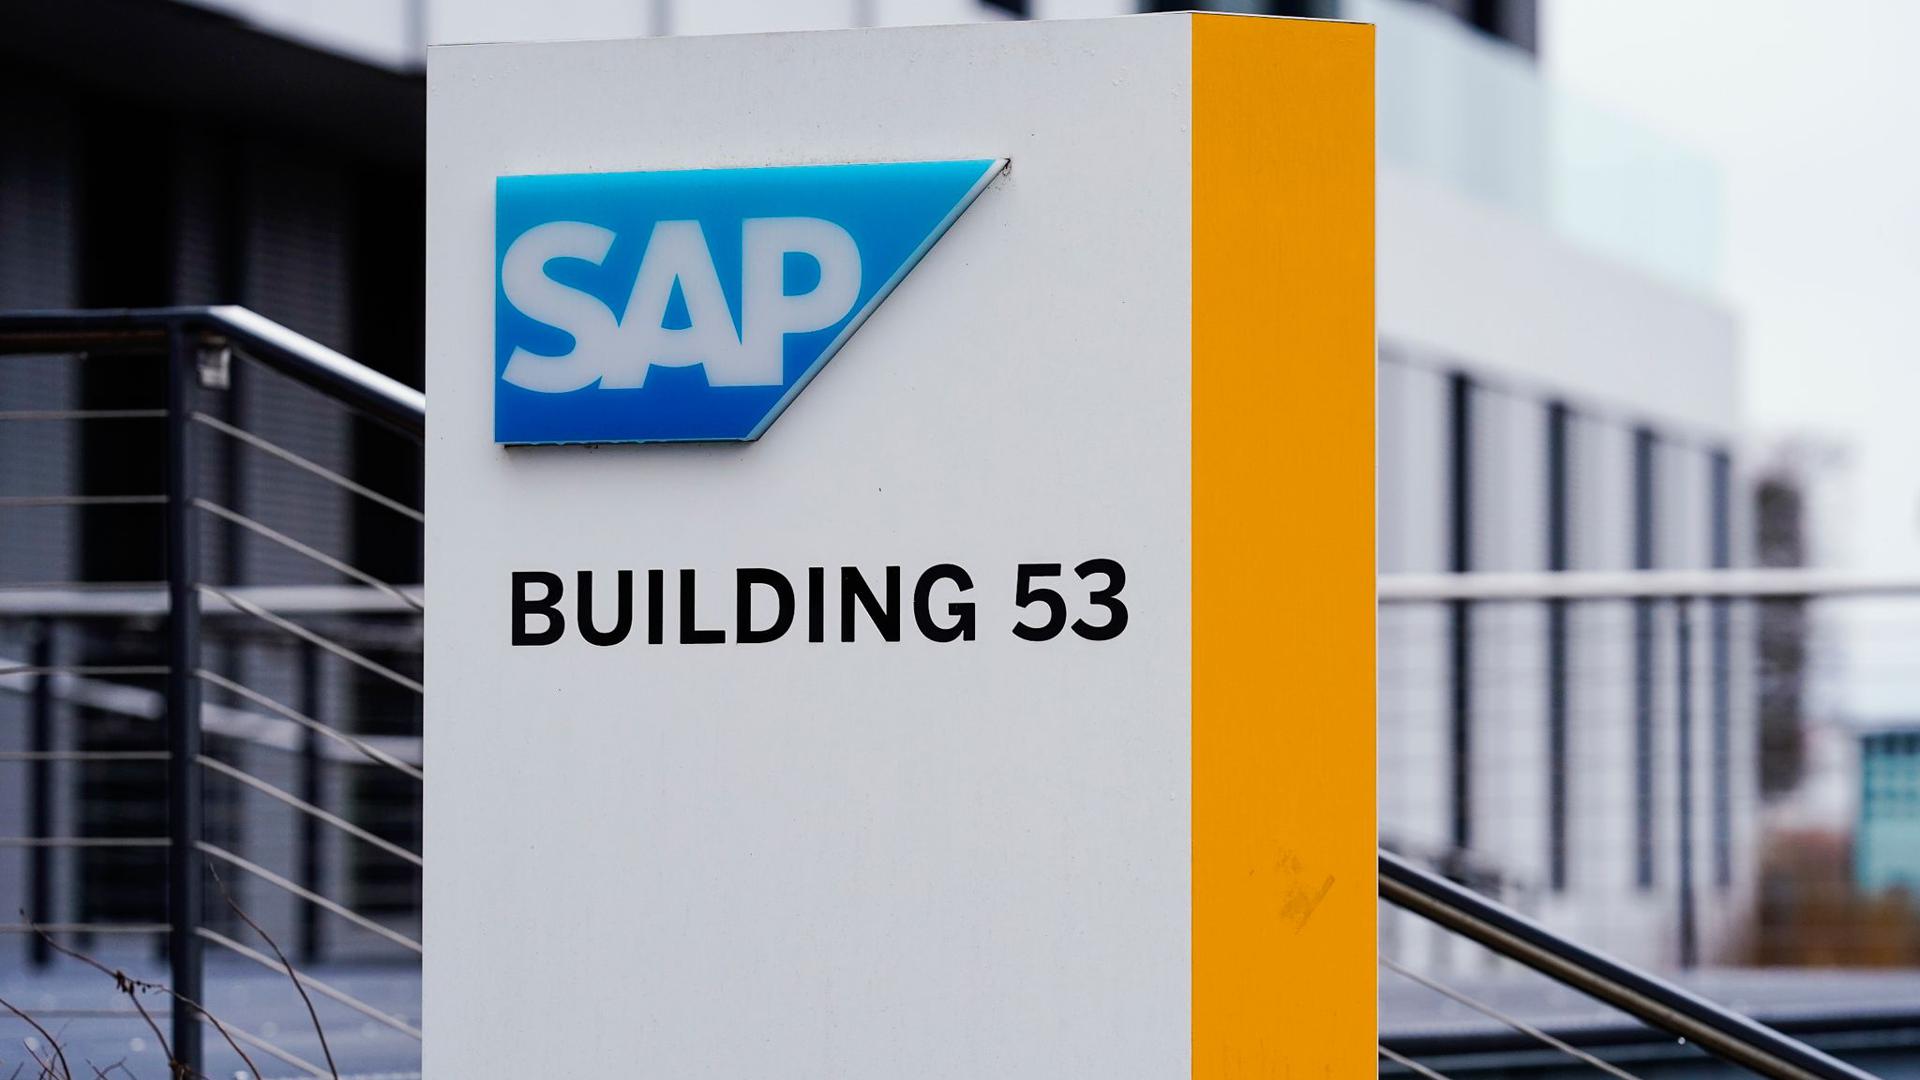 SAP gibt seine Geschäftszahlen für das abgelaufende Jahr bekannt.